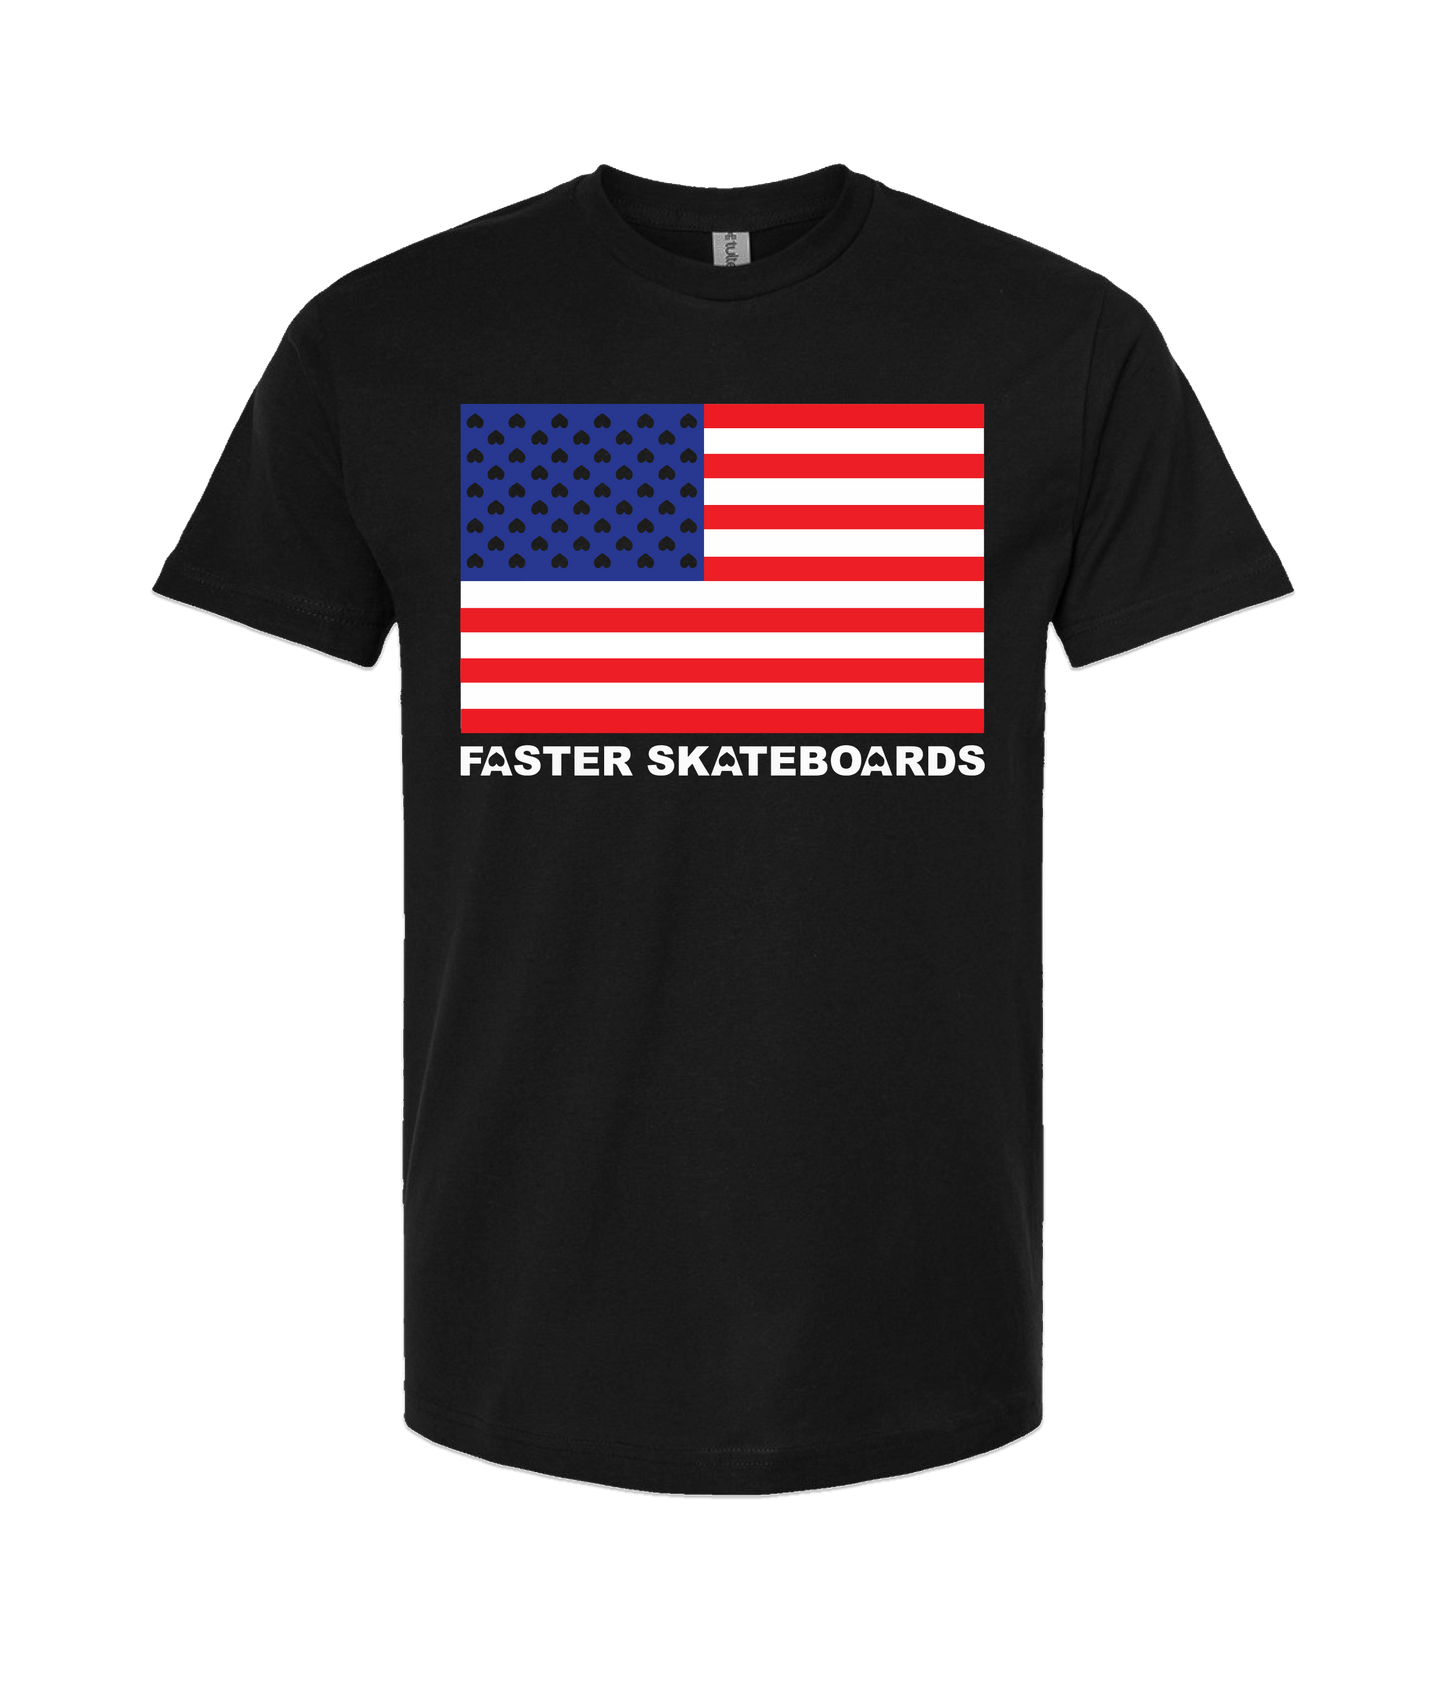 Faster Skateboards - FLAG - Black T-Shirt